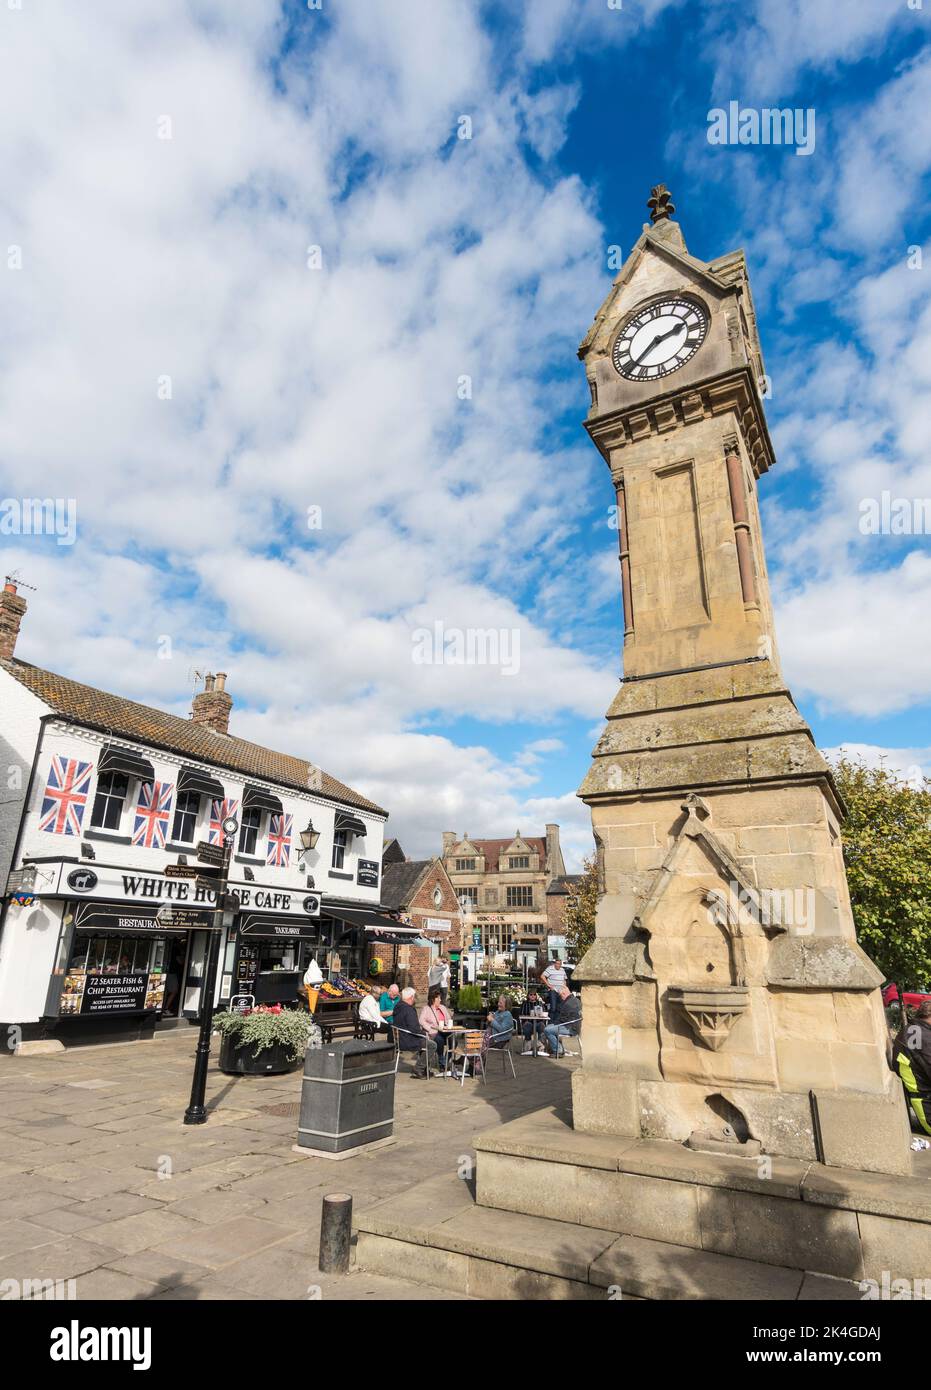 Thirsk Market Place Clock Spire y el café White Horse, North Yorkshire, Inglaterra, Reino Unido Foto de stock